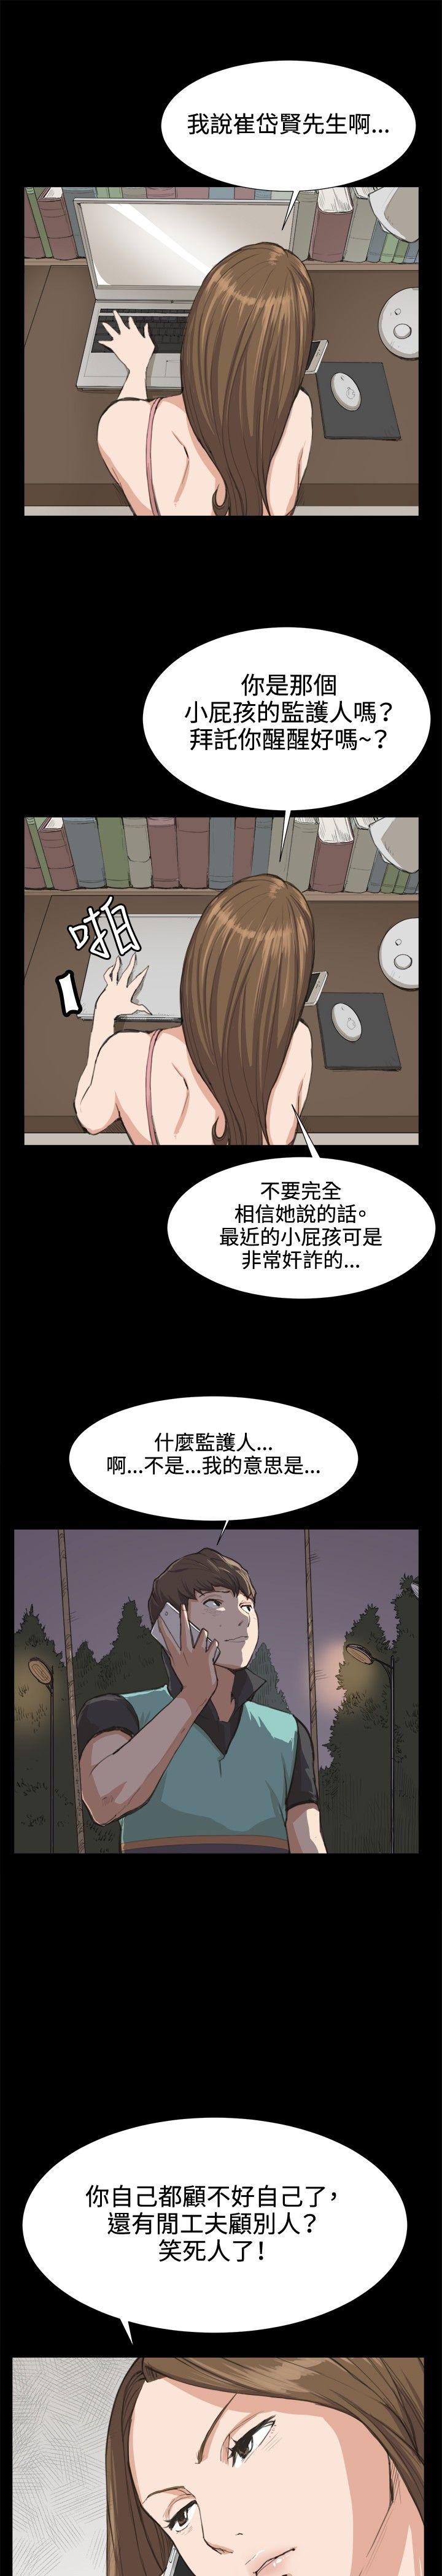 韩国污漫画 深夜便利店 第7话 13